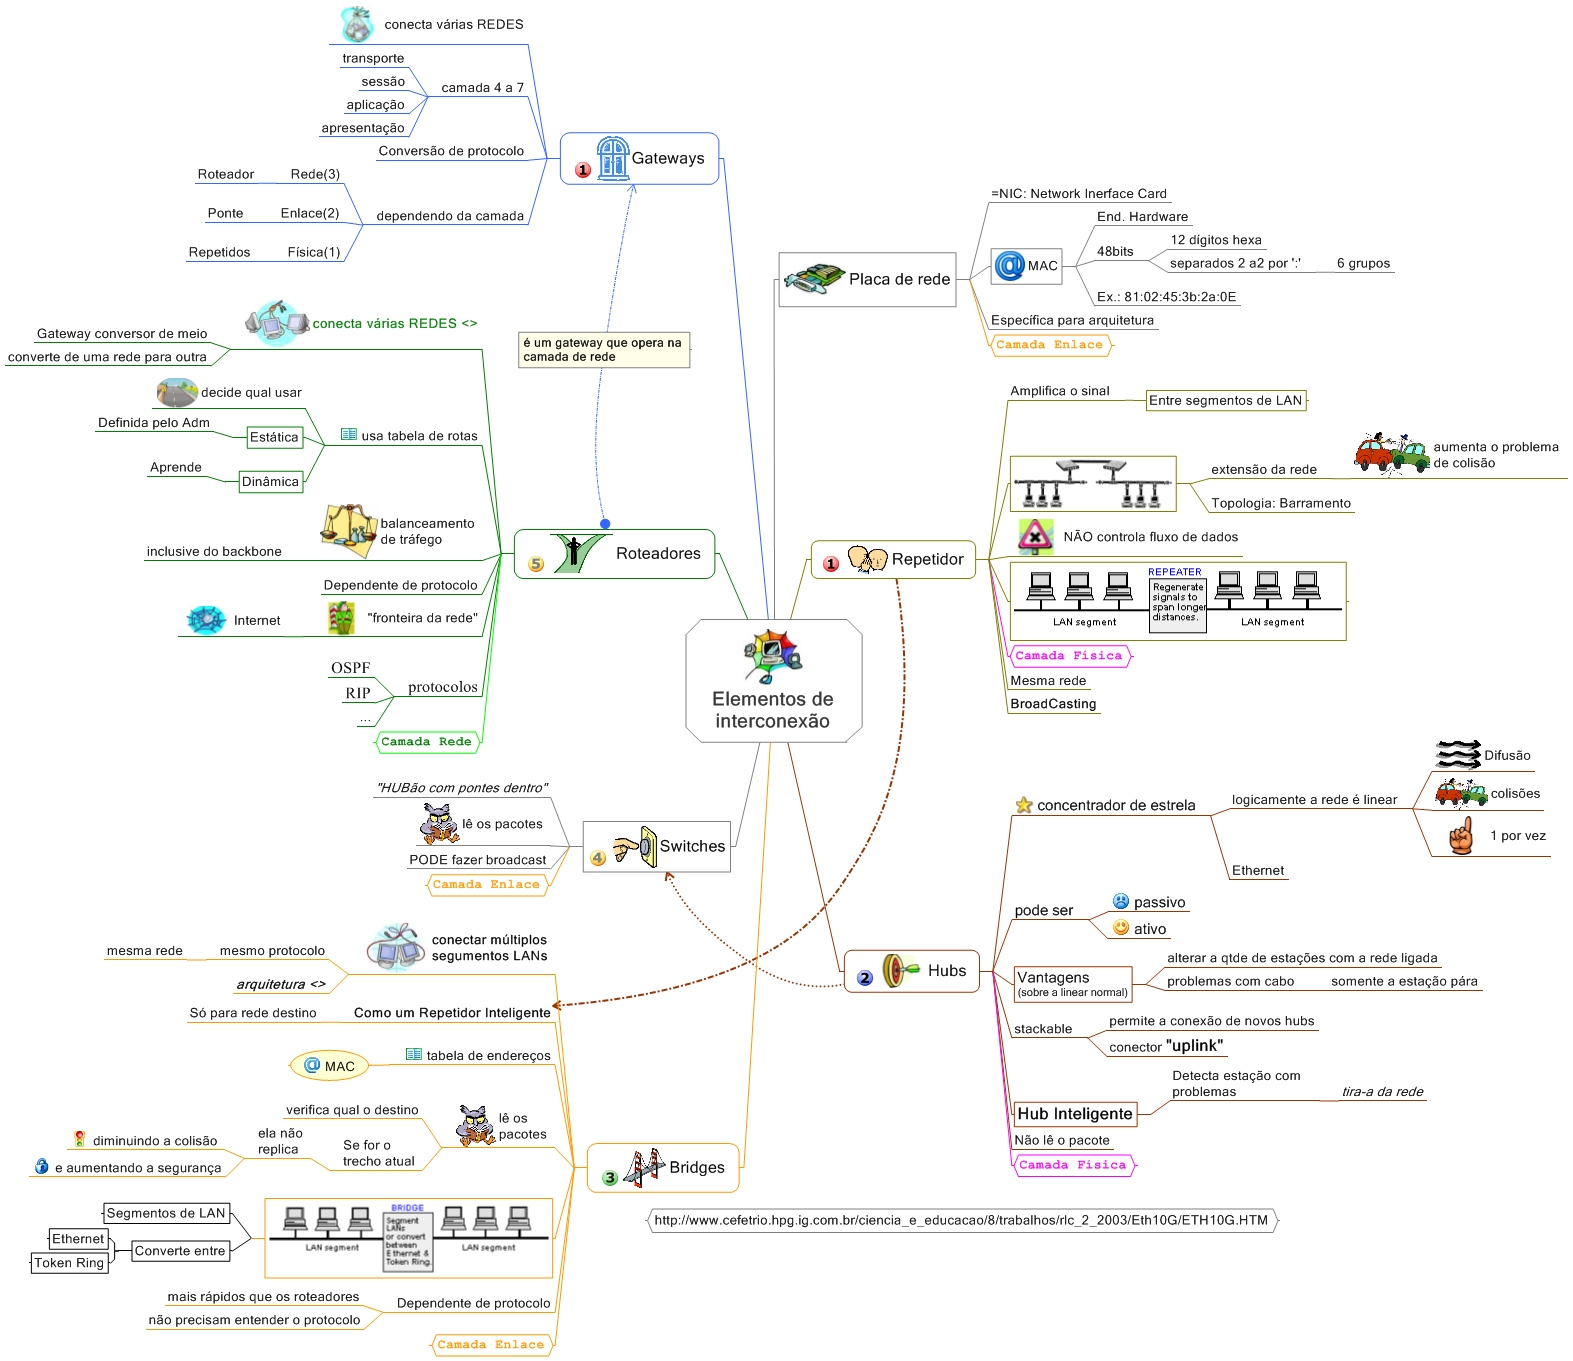 Mapa Mental de Redes de Computadores – Elementos de Interconexão de Redes -  Diego Macêdo